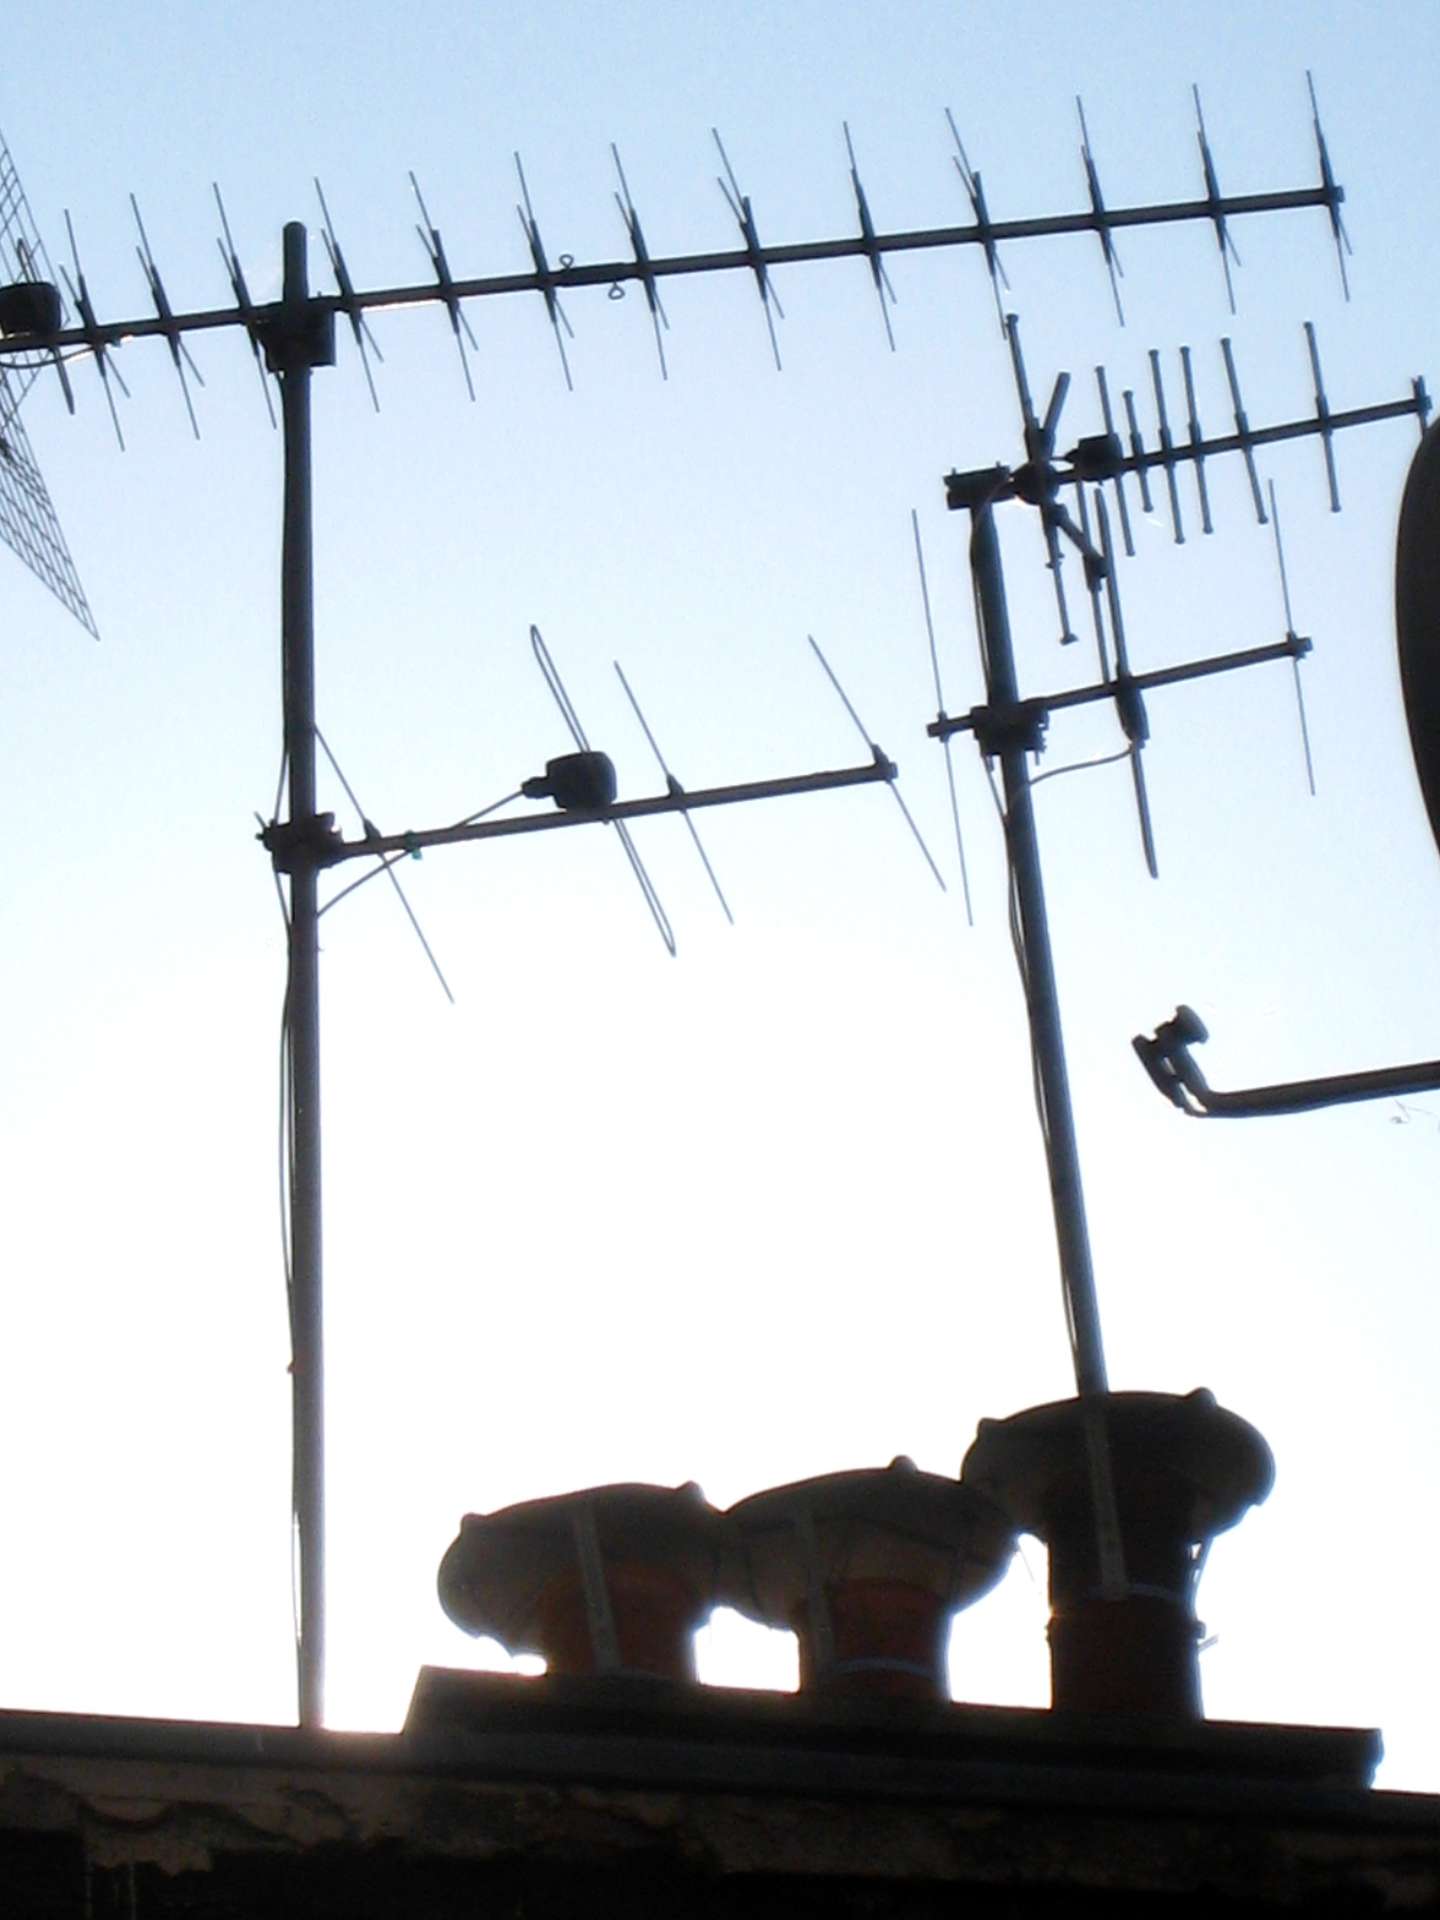 Comment améliorer le signal d'une antenne de télévision ?